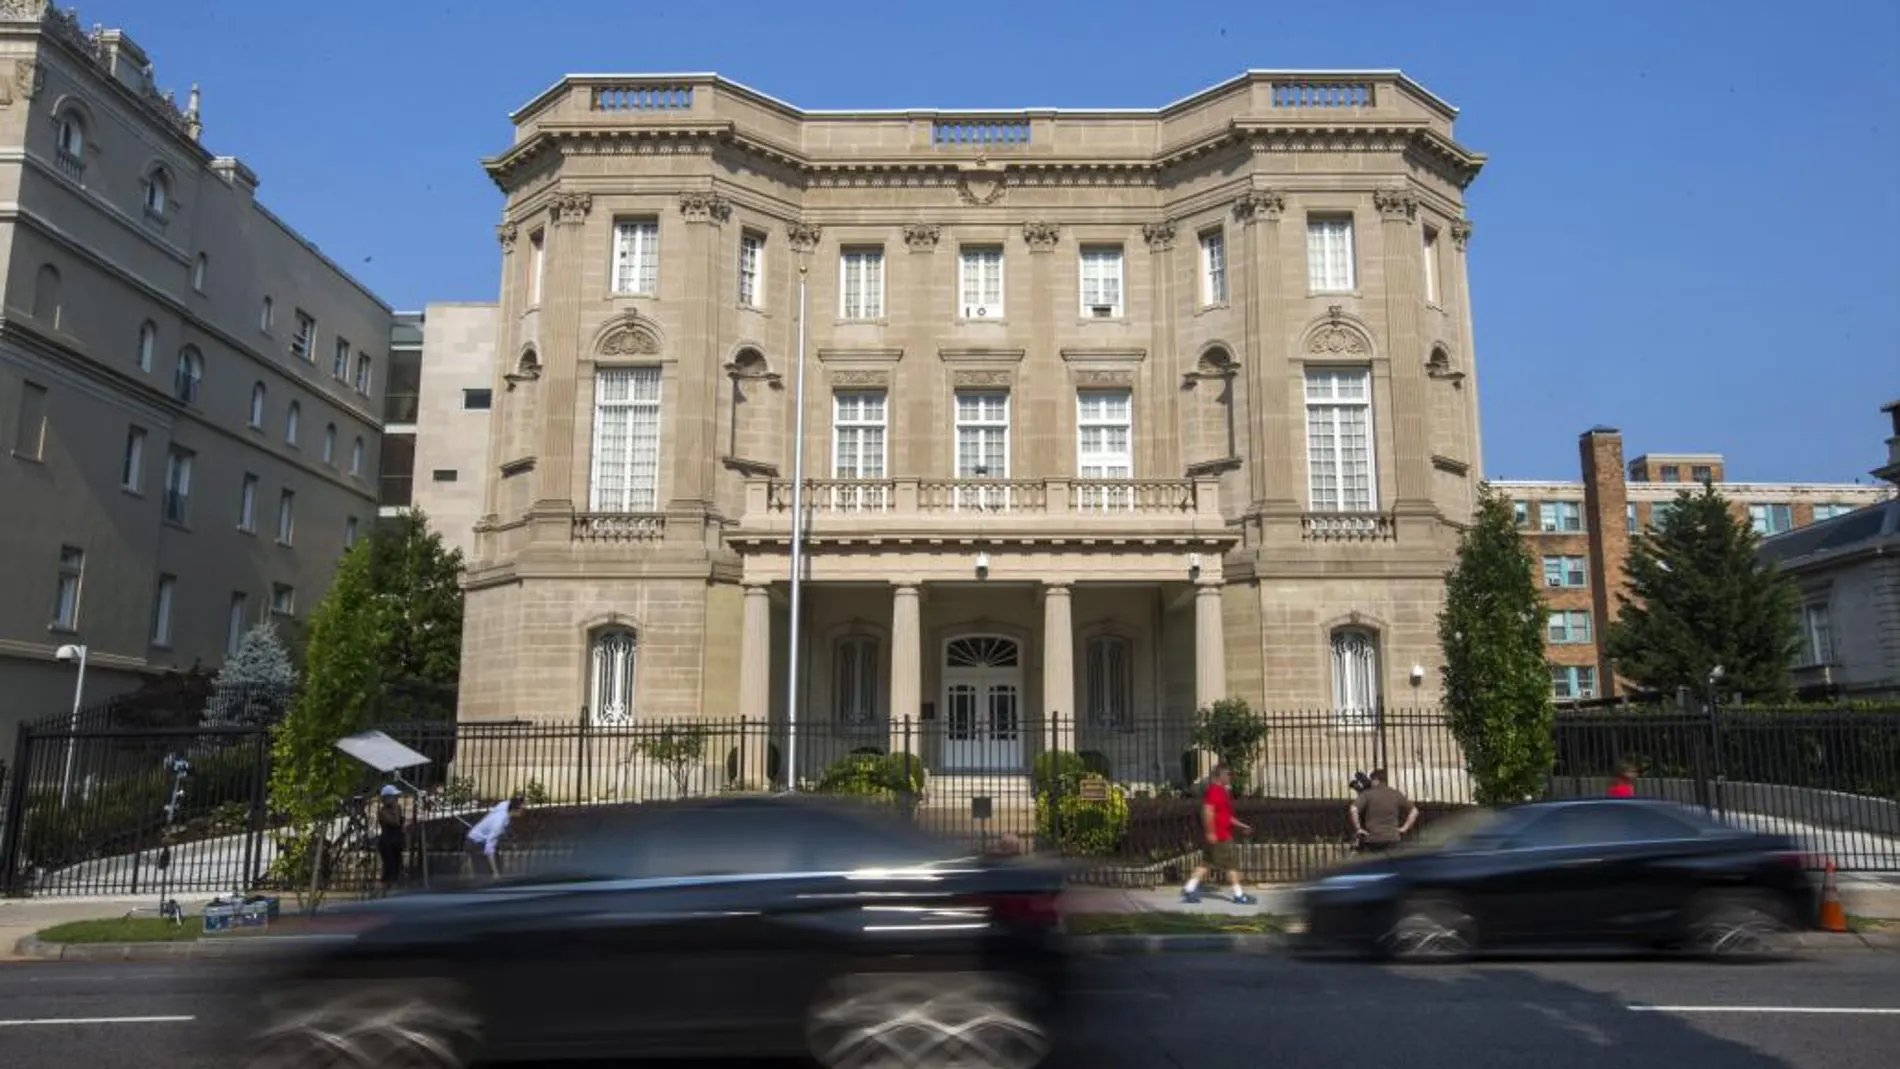 Vista del edificio que alberga la Sección de Intereses de Cuba, y que fue la primera embajada cubana en Estados Unidos en 1961.